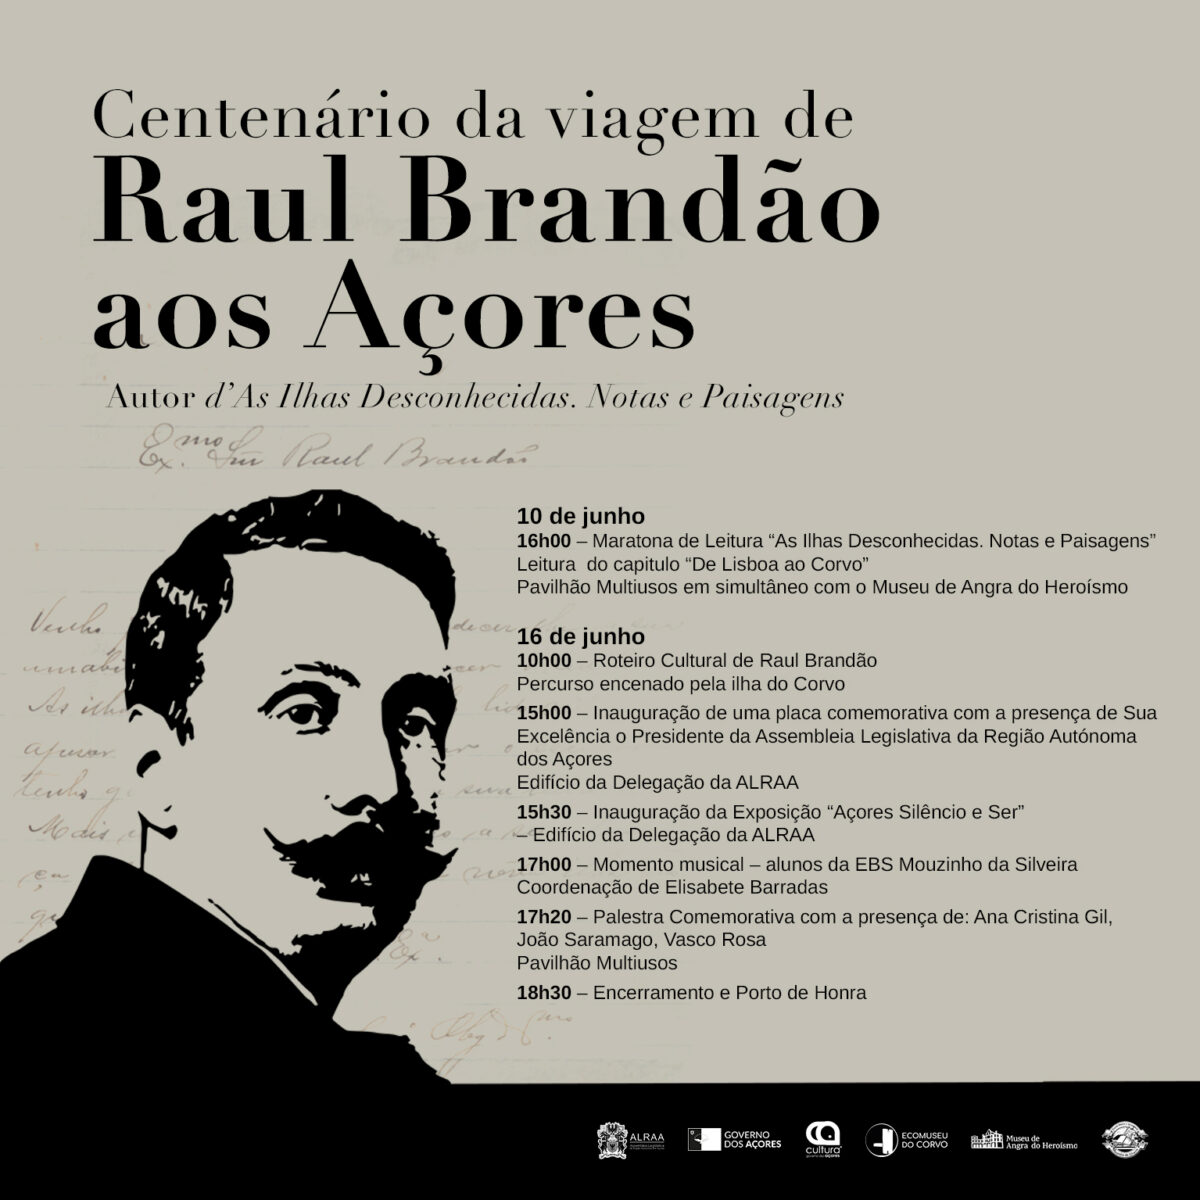 Centenário da Viagem de Raul Brandão aos Açores's featured image